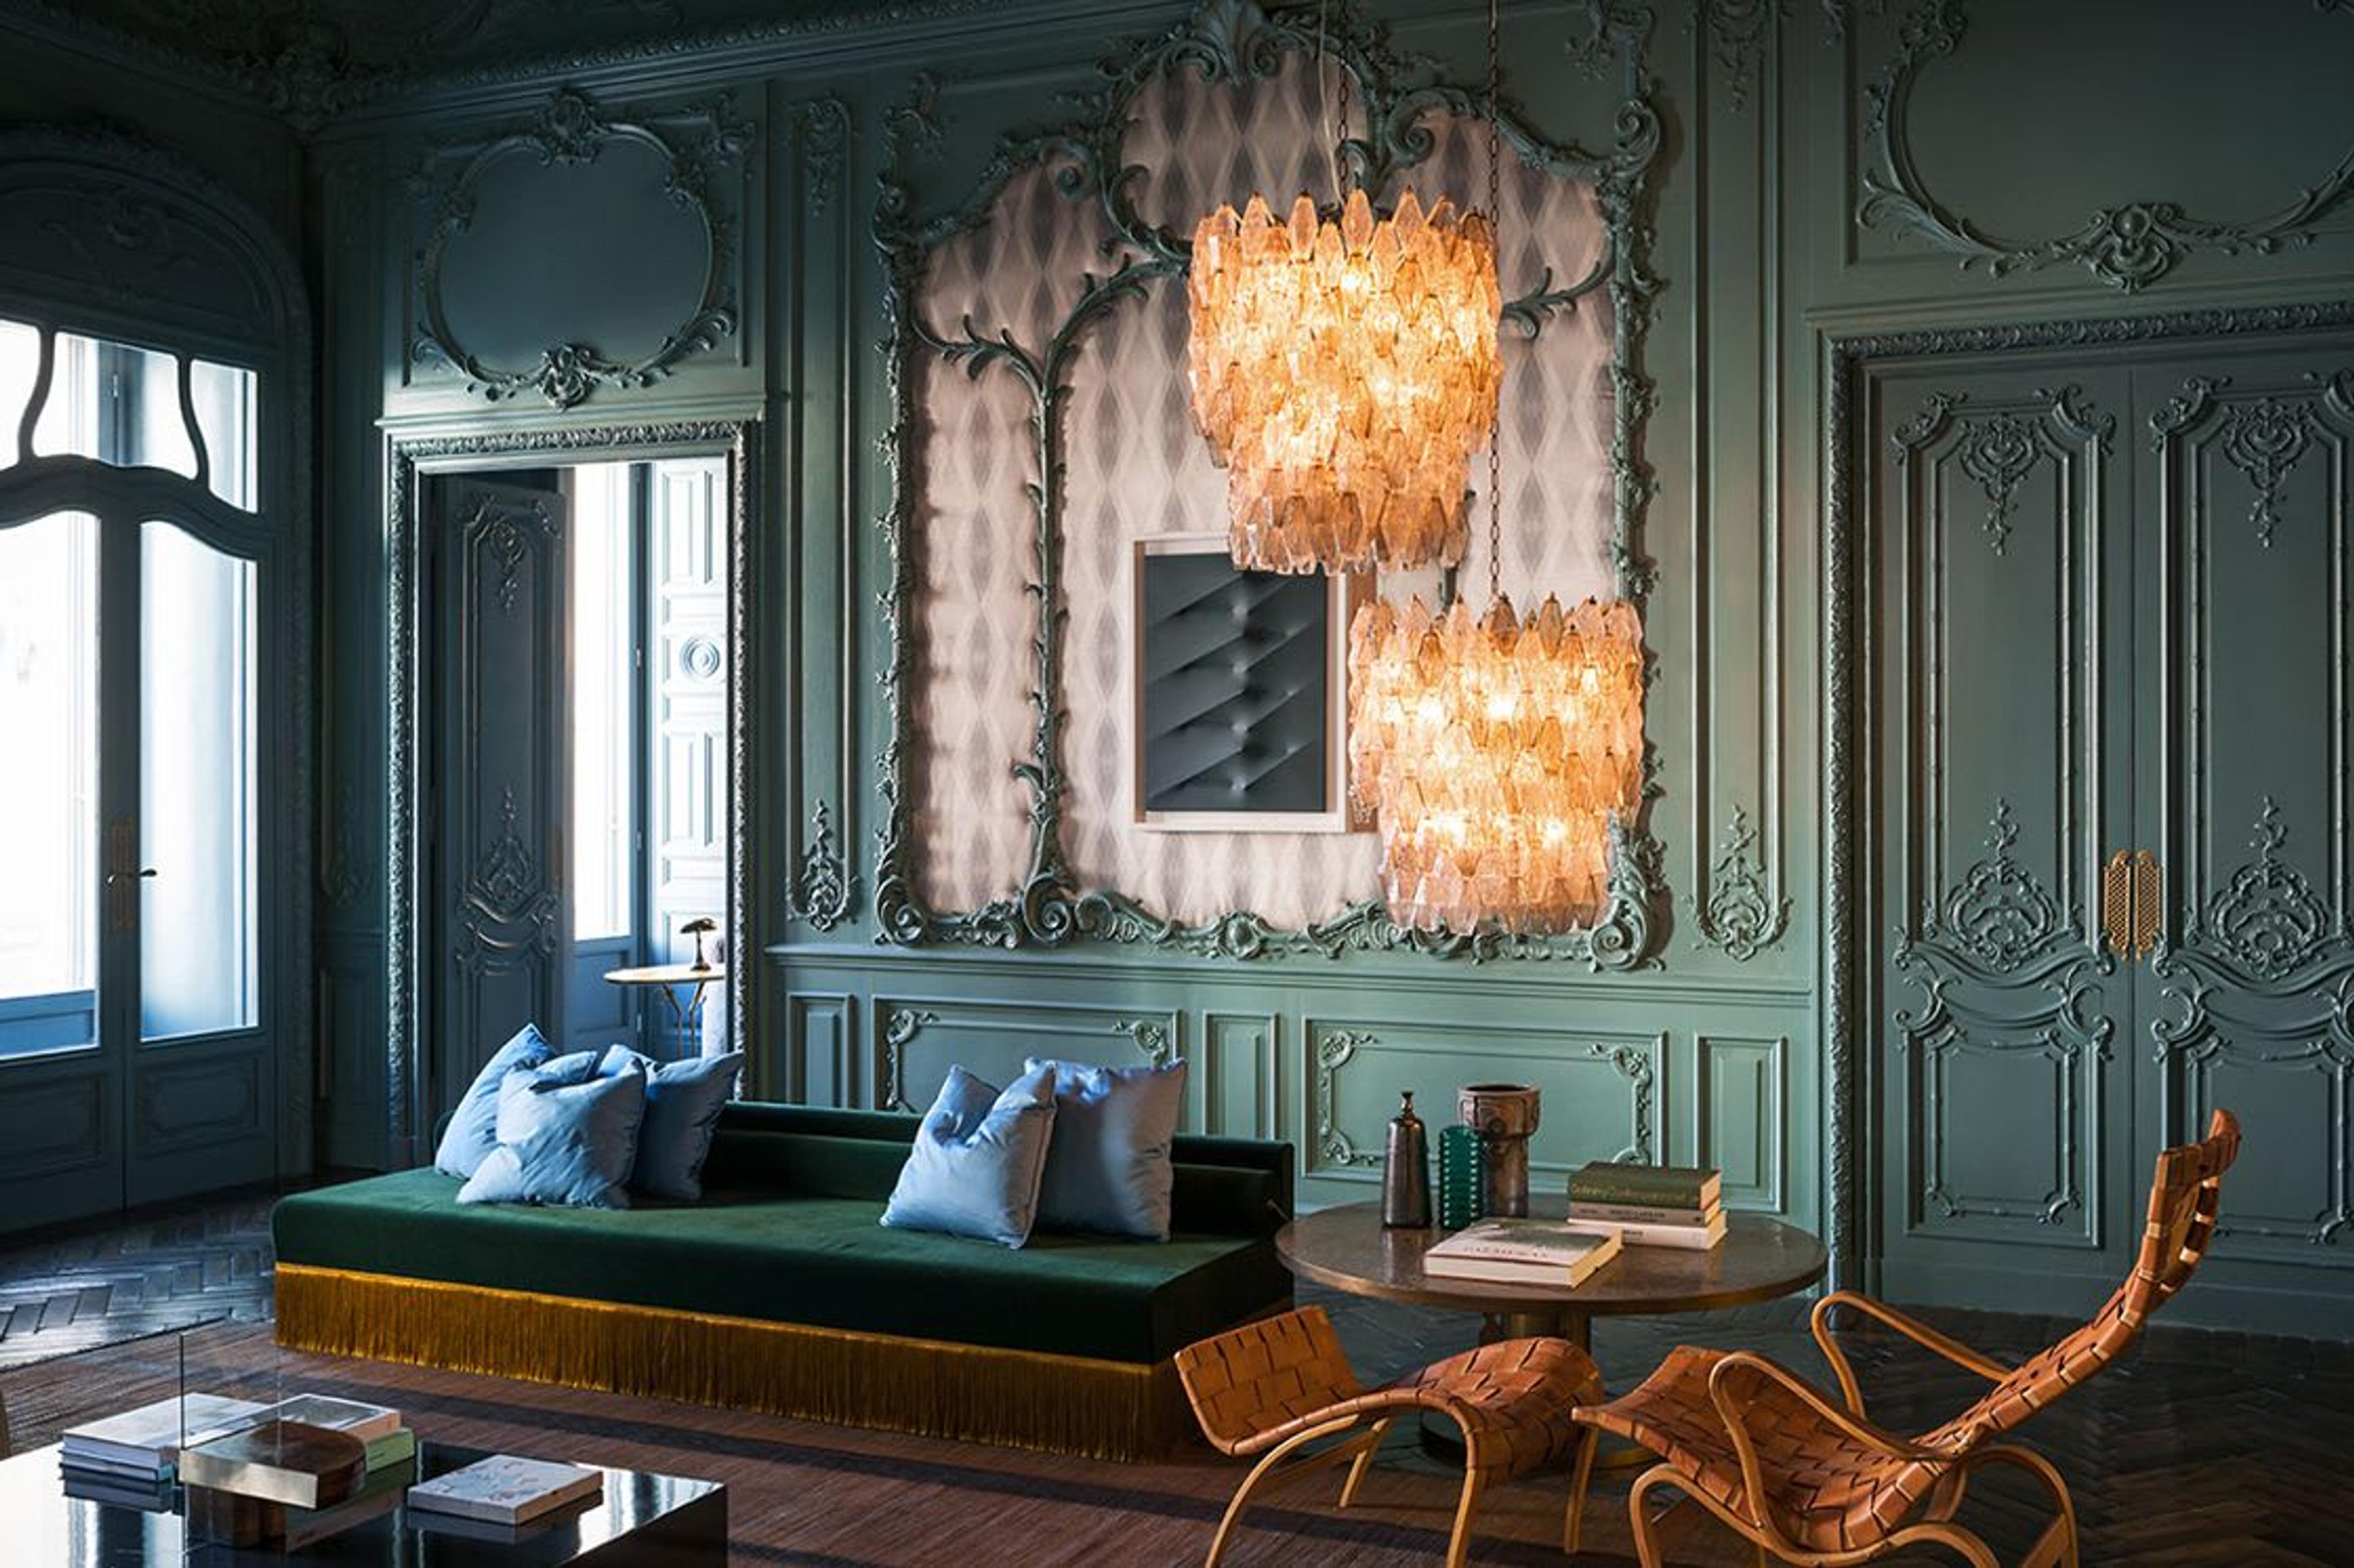 Palazzo Fendi VIP apartment designed by Dimore Studio. Photography by Andrea Ferrari